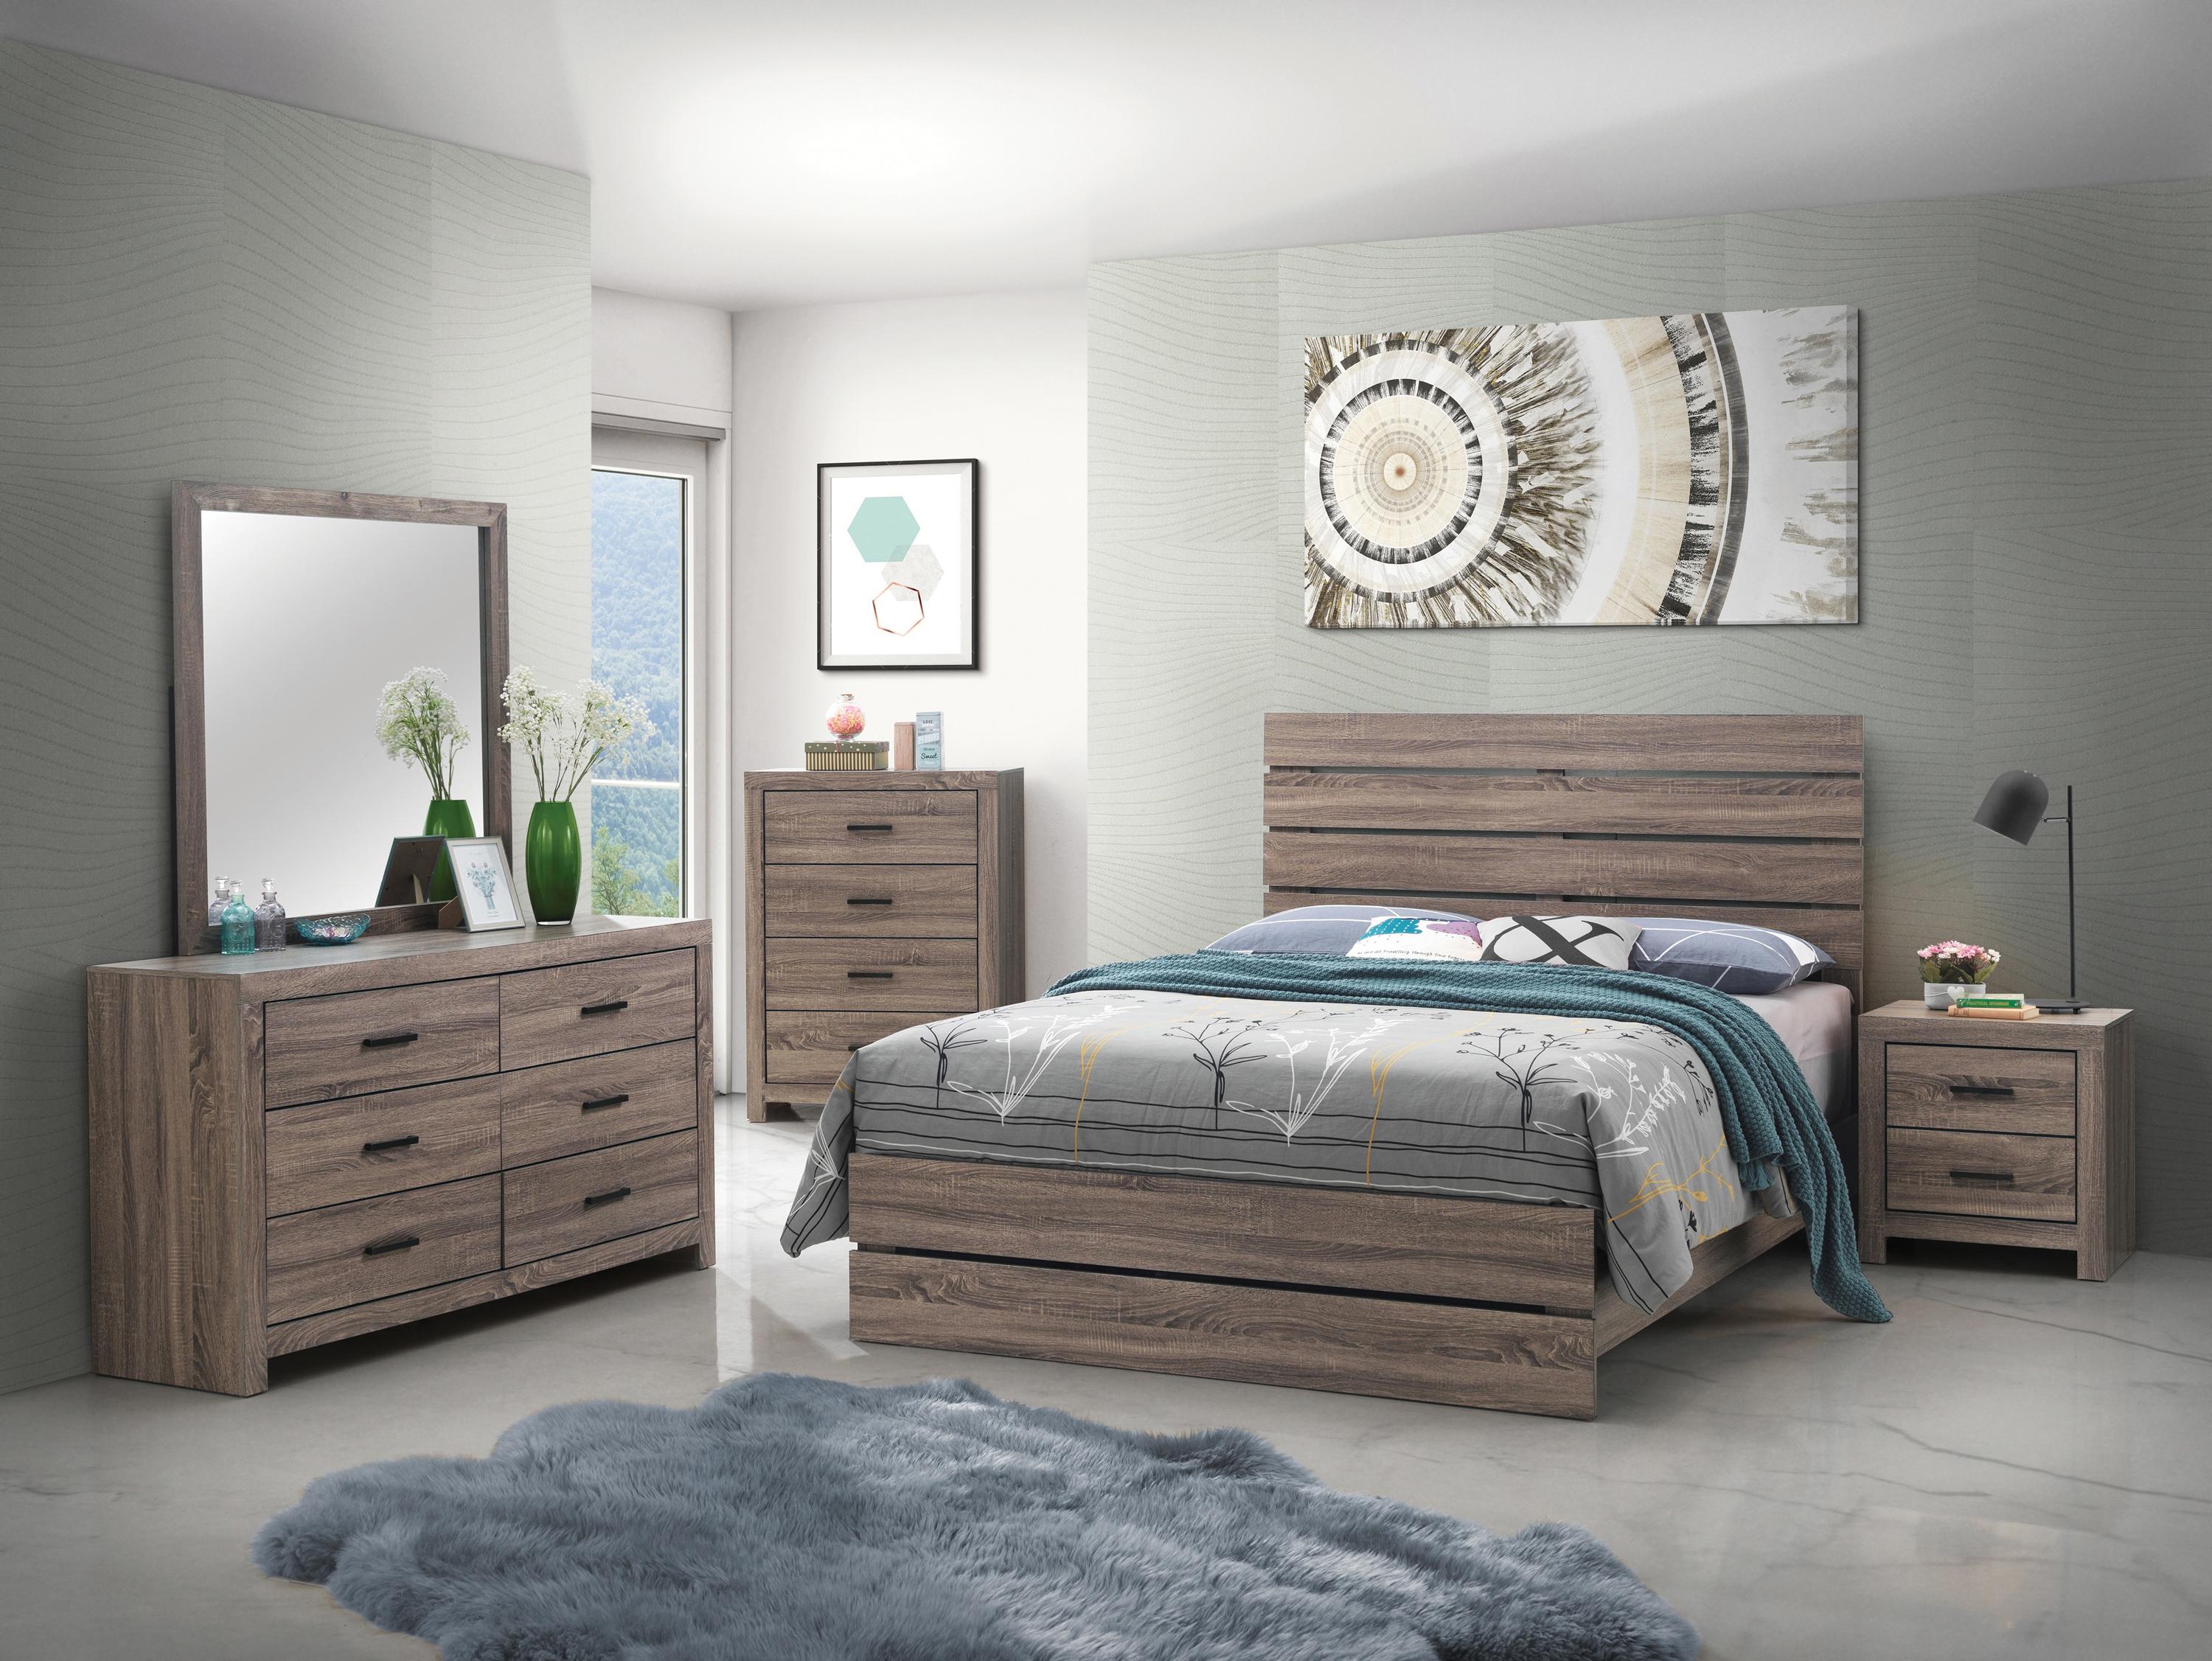 

    
Rustic Barrel Oak Wood Queen Panel Bedroom Set 3pcs Coaster 207041Q Brantford
